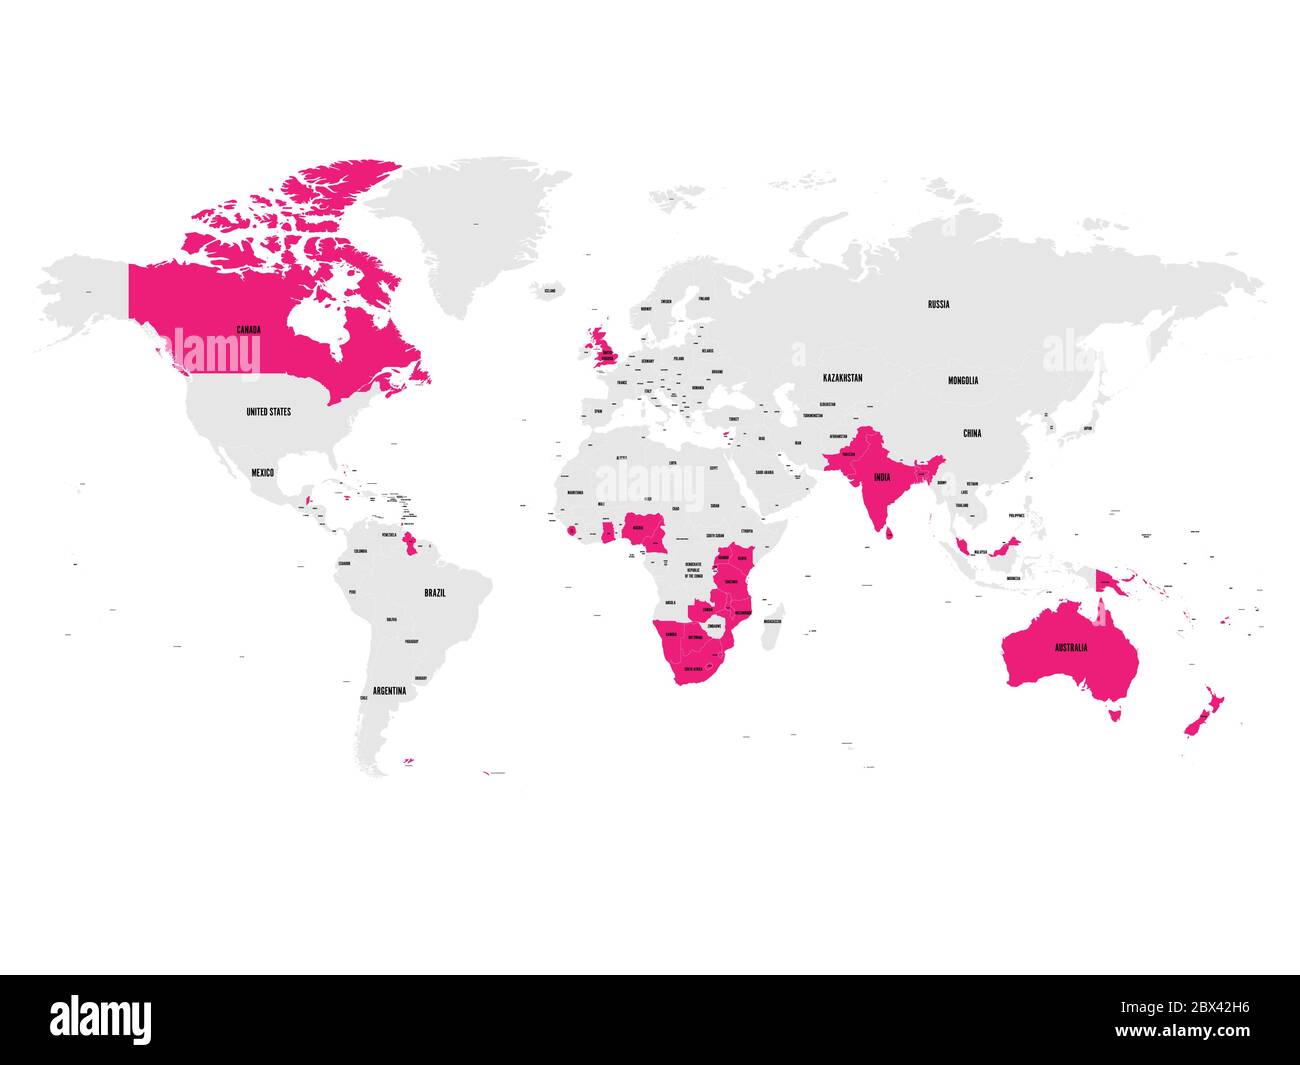 Die Mitgliedstaaten des British Commonwealth sind auf der Weltkarte rosa hervorgehoben. Vektorgrafik. Stock Vektor